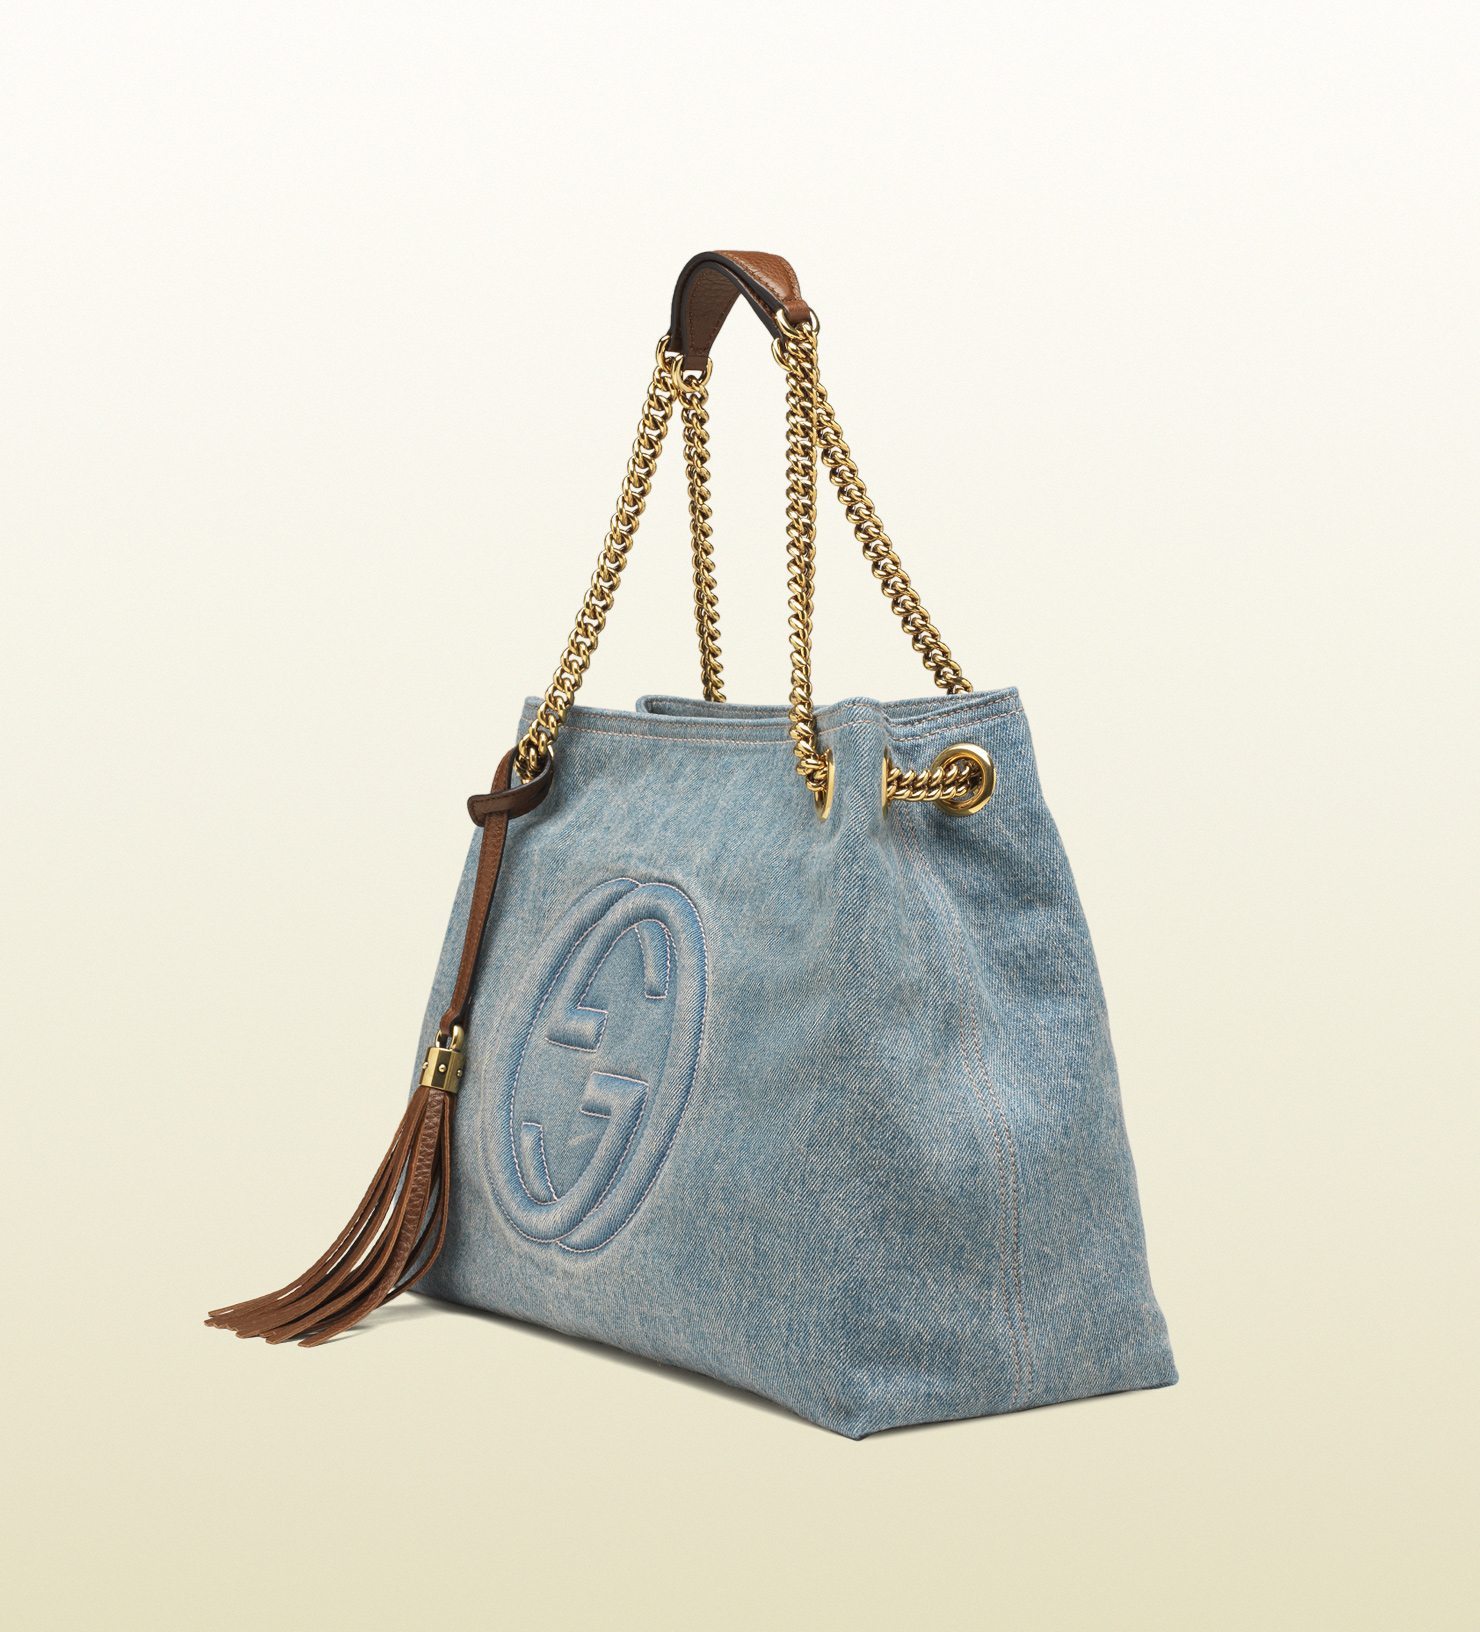 Gucci Soho Denim Shoulder Bag in Blue - Lyst